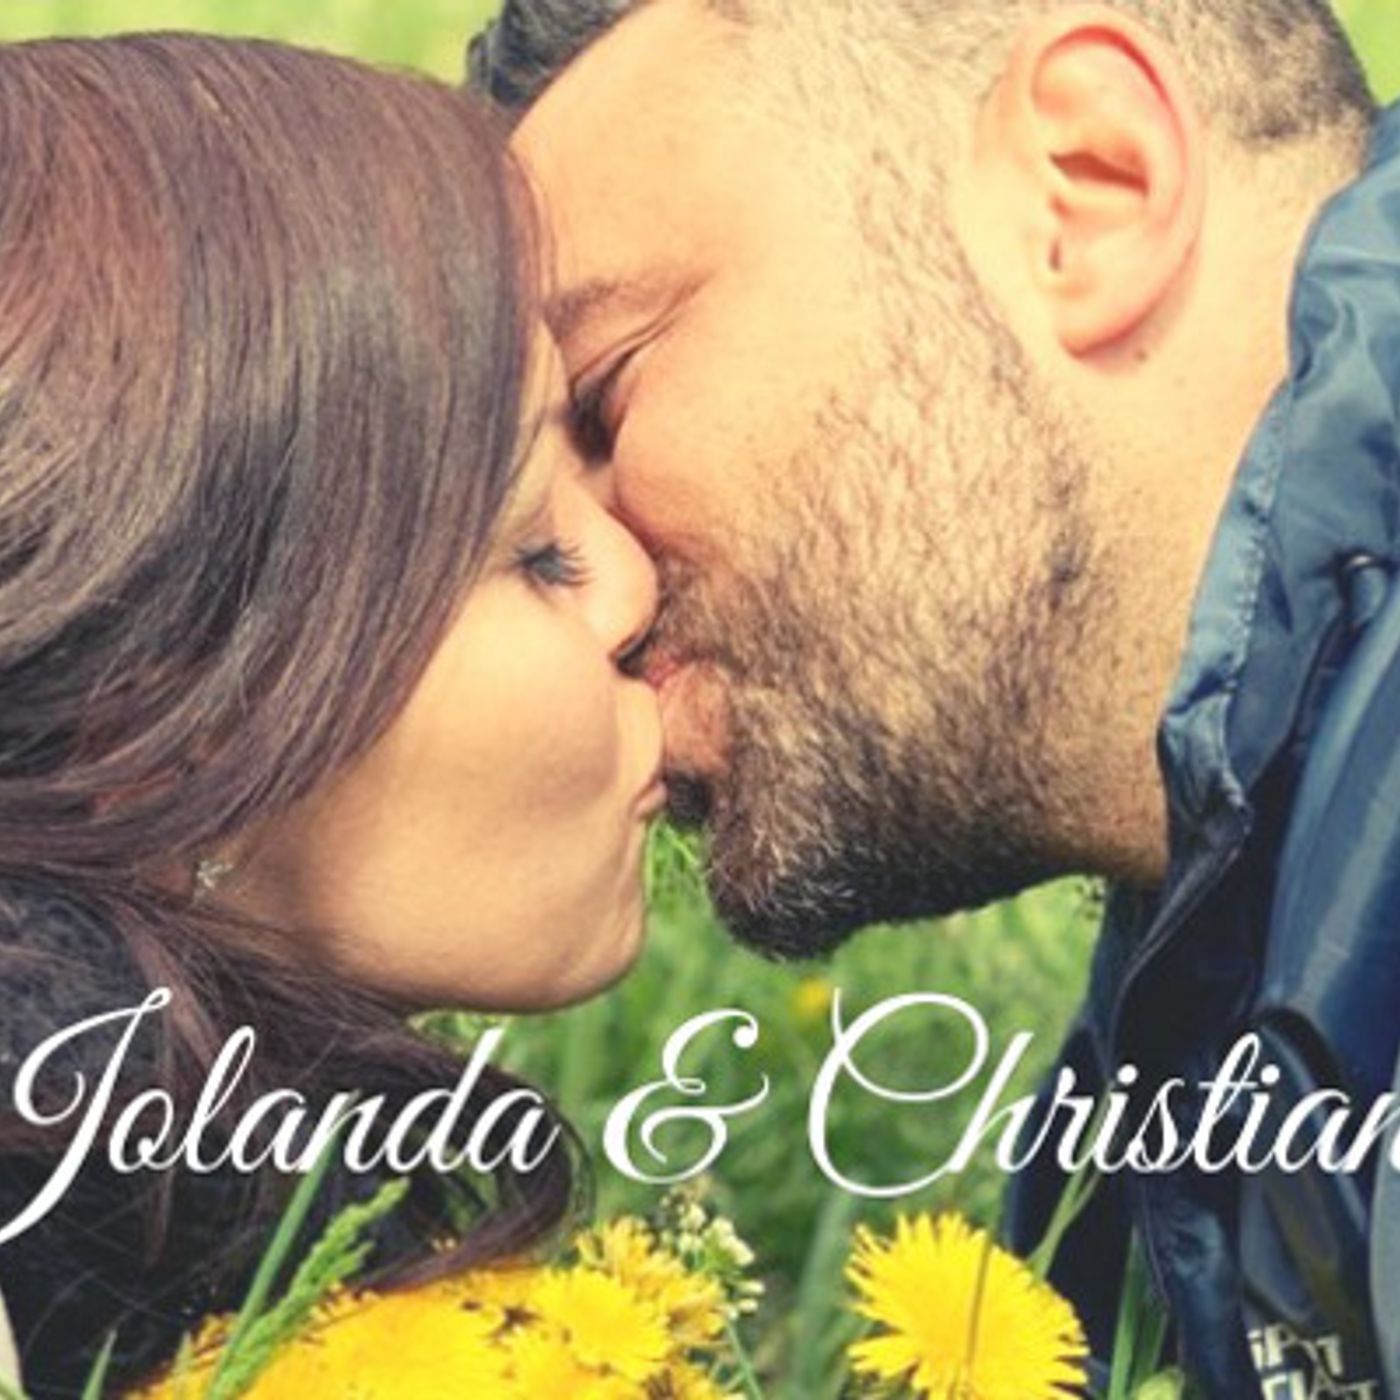 Iolanda & Christian: 8 giugno 2019